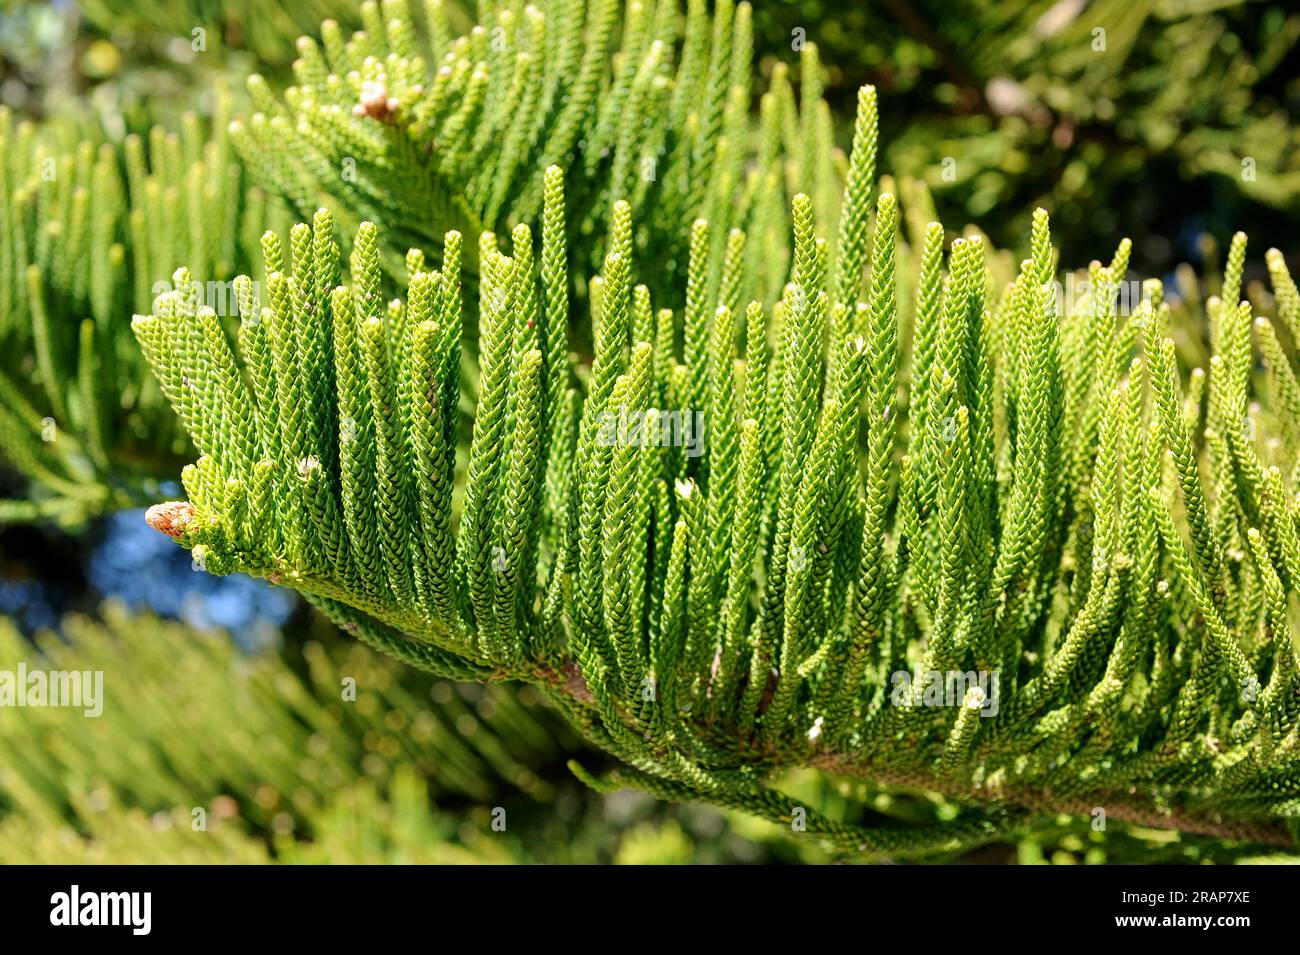 Le pin de l'île Norfolk ou pin étoilé (Araucaria heterophylla ou A. excelsa) est un arbre endémique originaire de l'île Norfolk dans l'océan Pacifique. Laisse des détails. P Banque D'Images